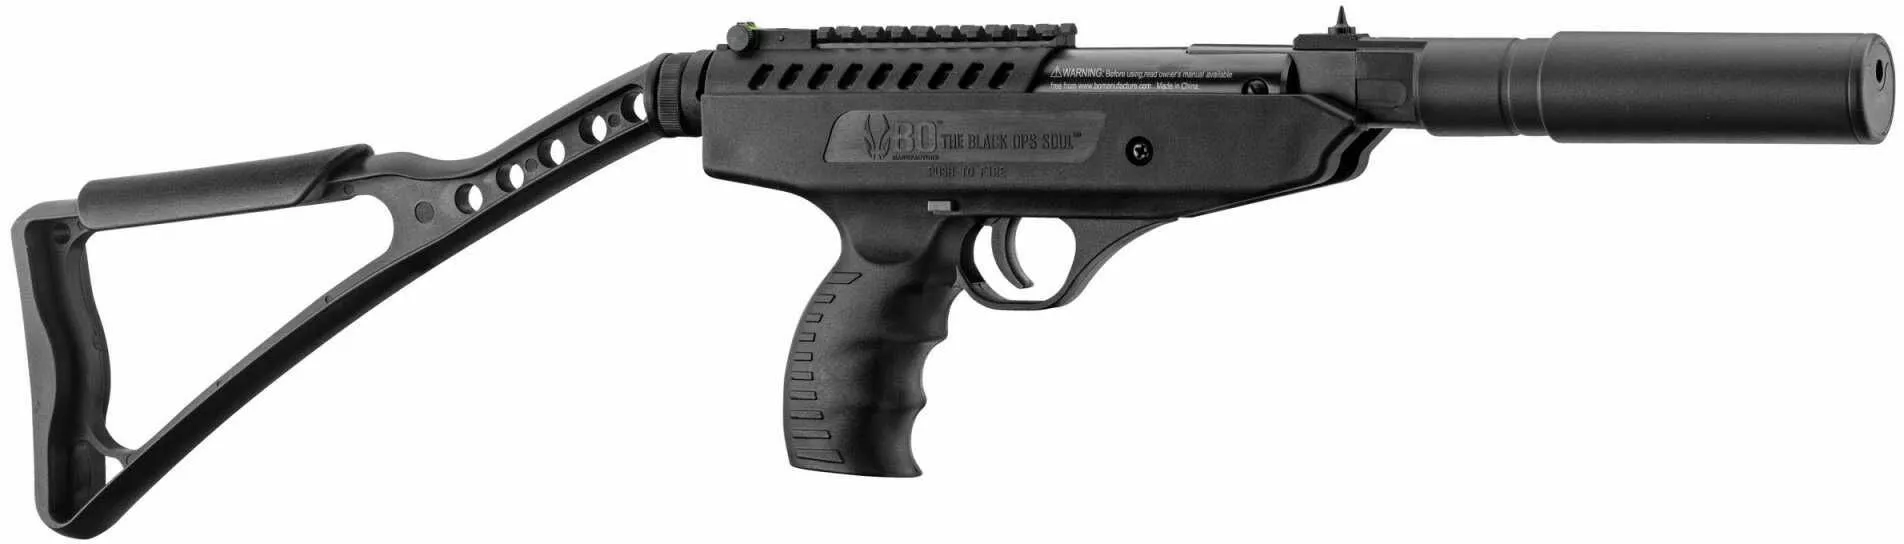 wiatrowka pistolet black ops langley hitman 5 5 mm